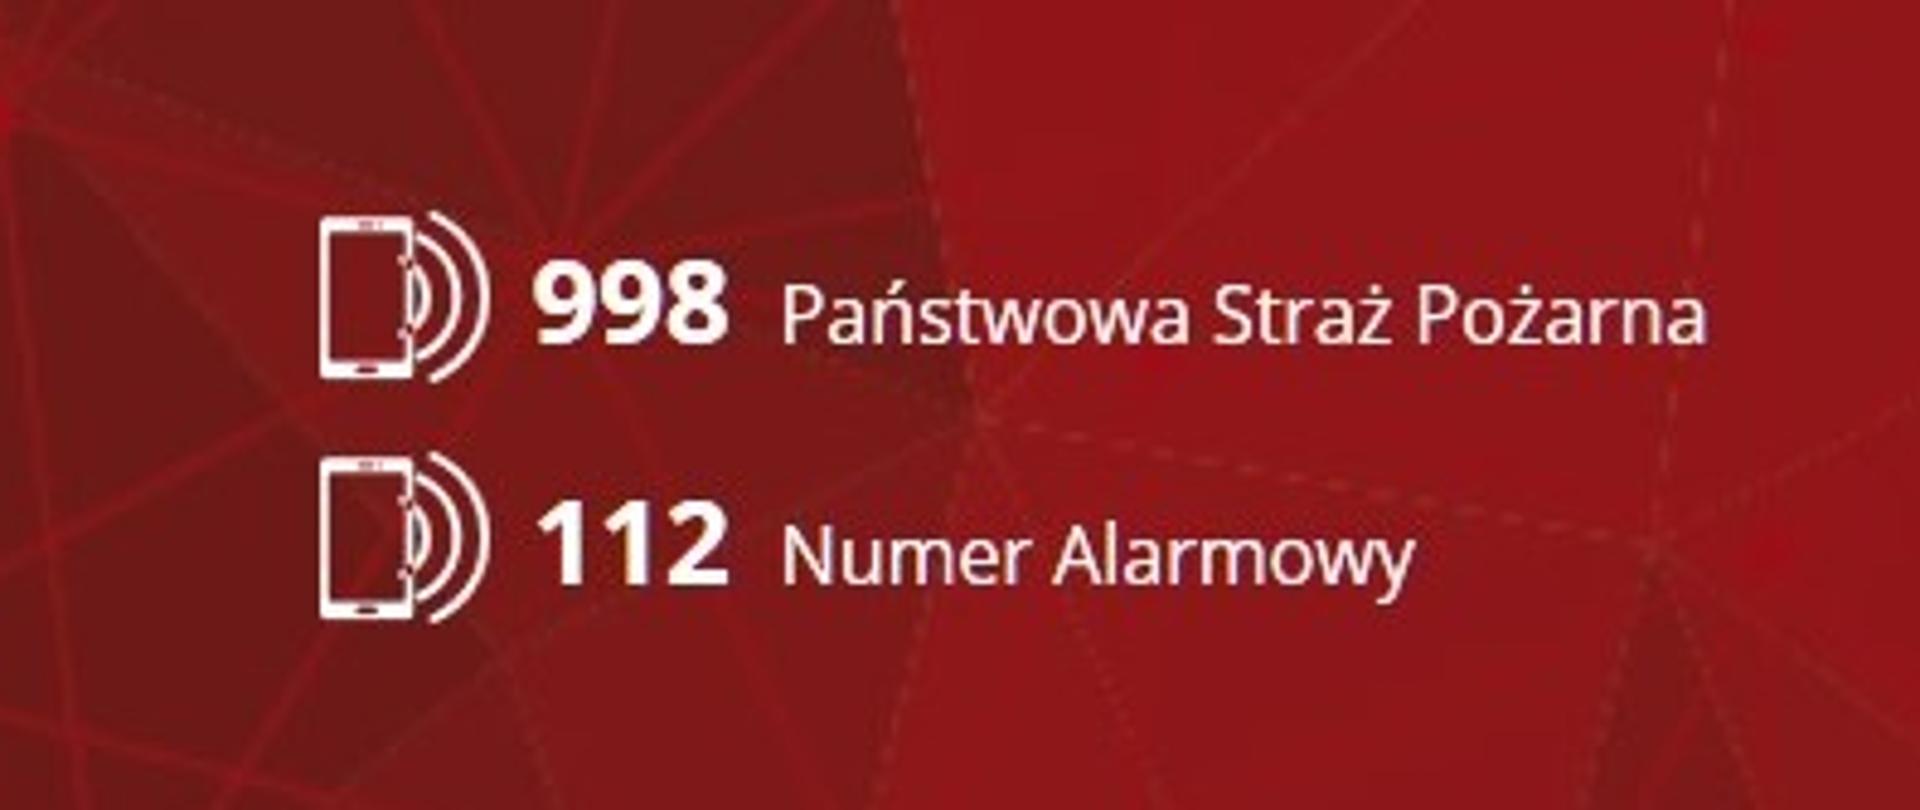 Logo PSP oraz numery telefonów ratunkowych 998 i 112 koloru białego na czerwonym tle